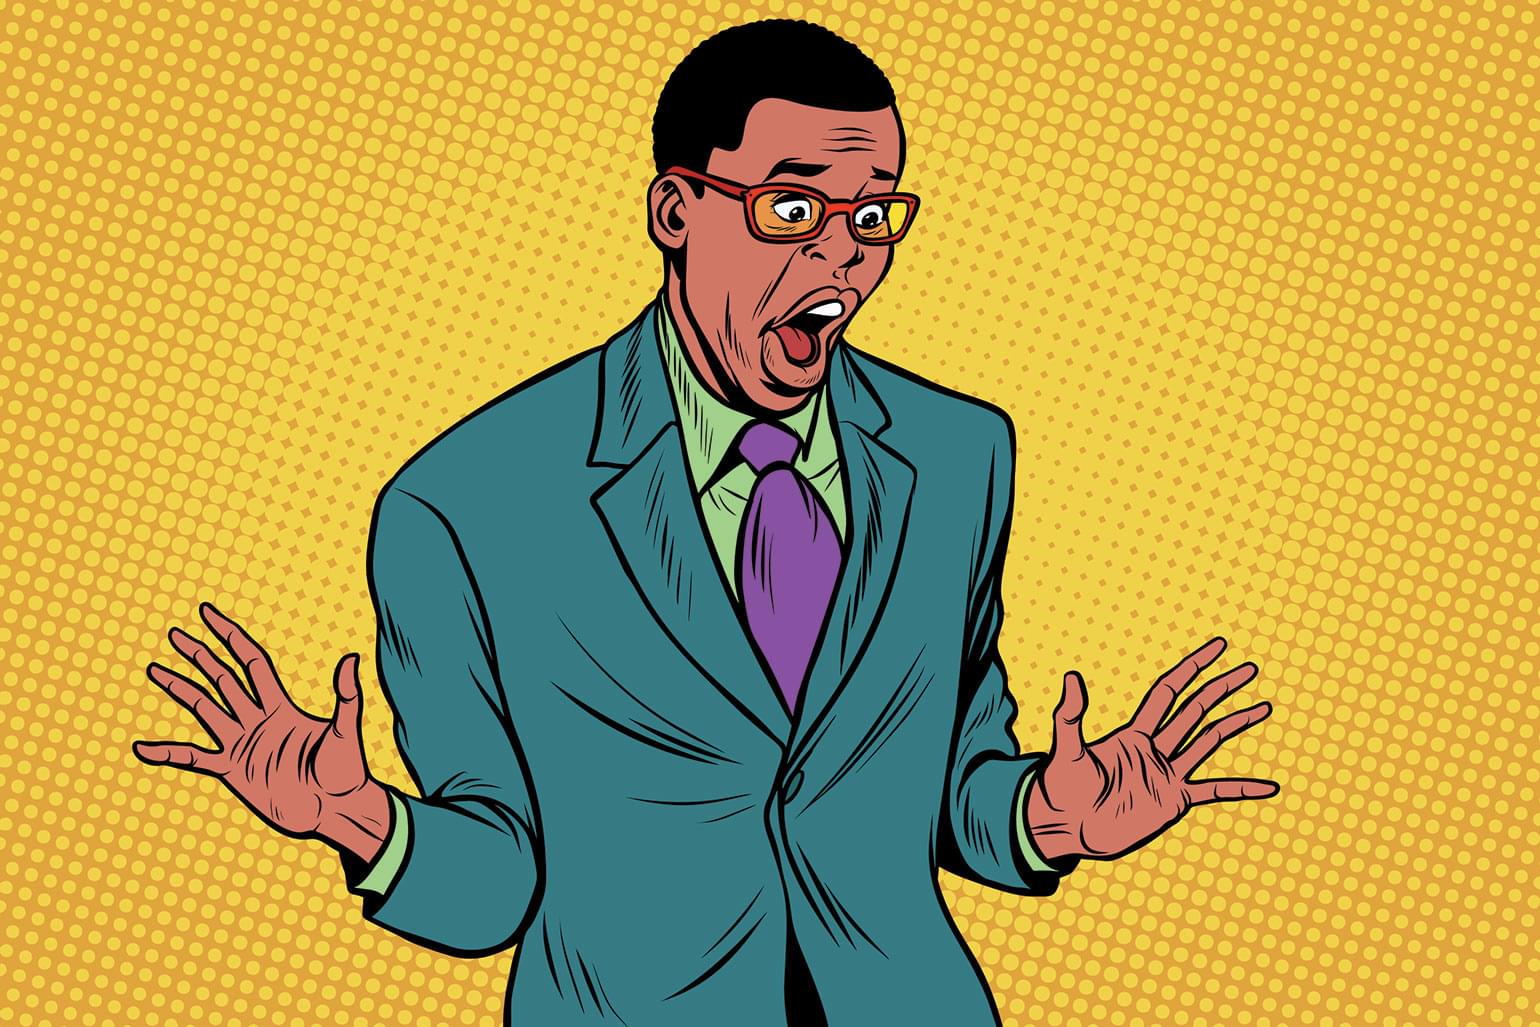 Homme d’affaires afro-américain stupéfait. Illustration vectorielle pop art rétro.